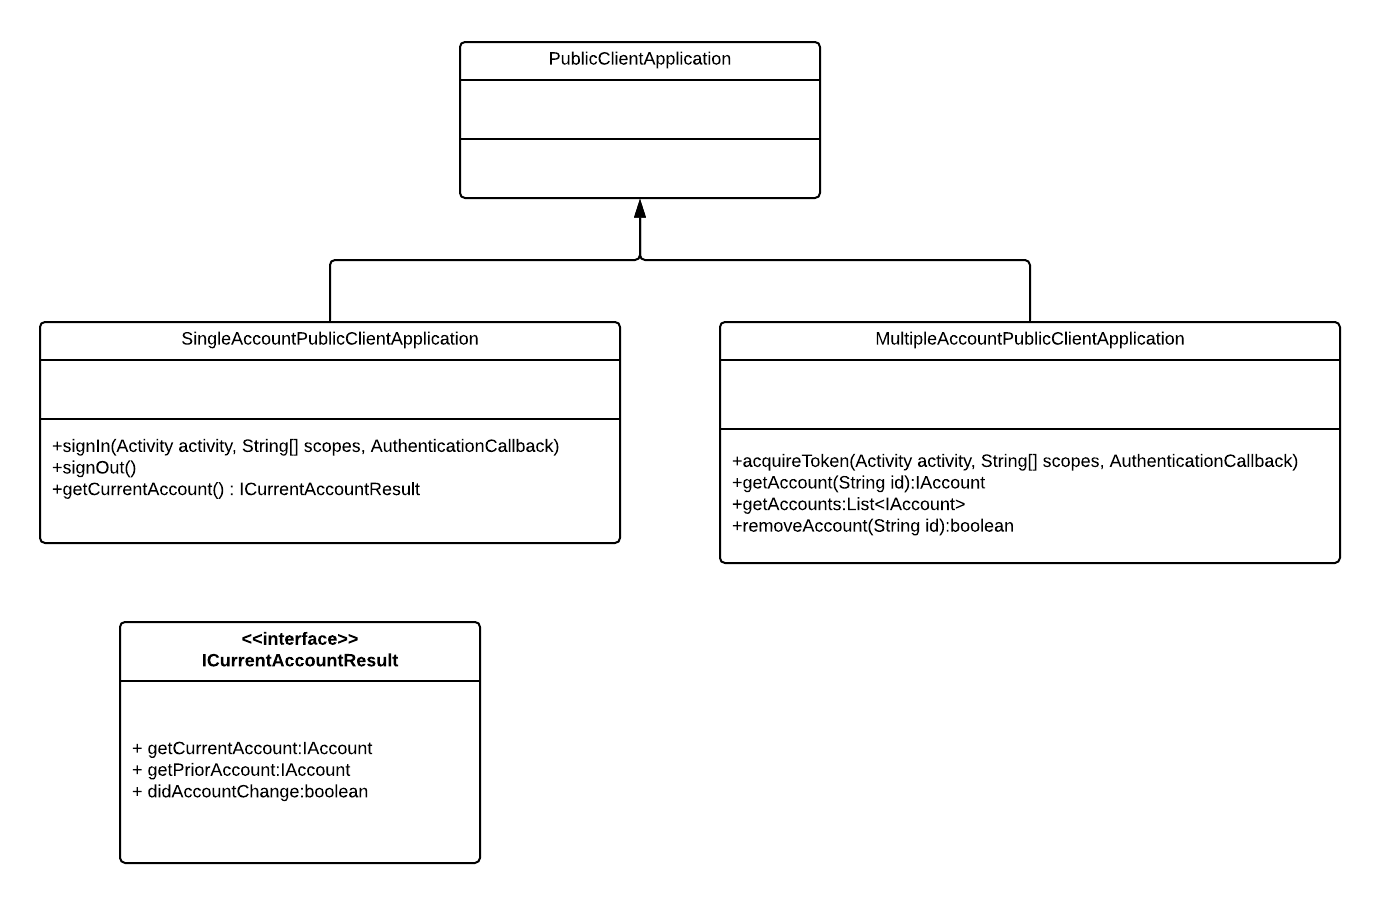 SingleAccountPublicClientApplication UML Class Diagram